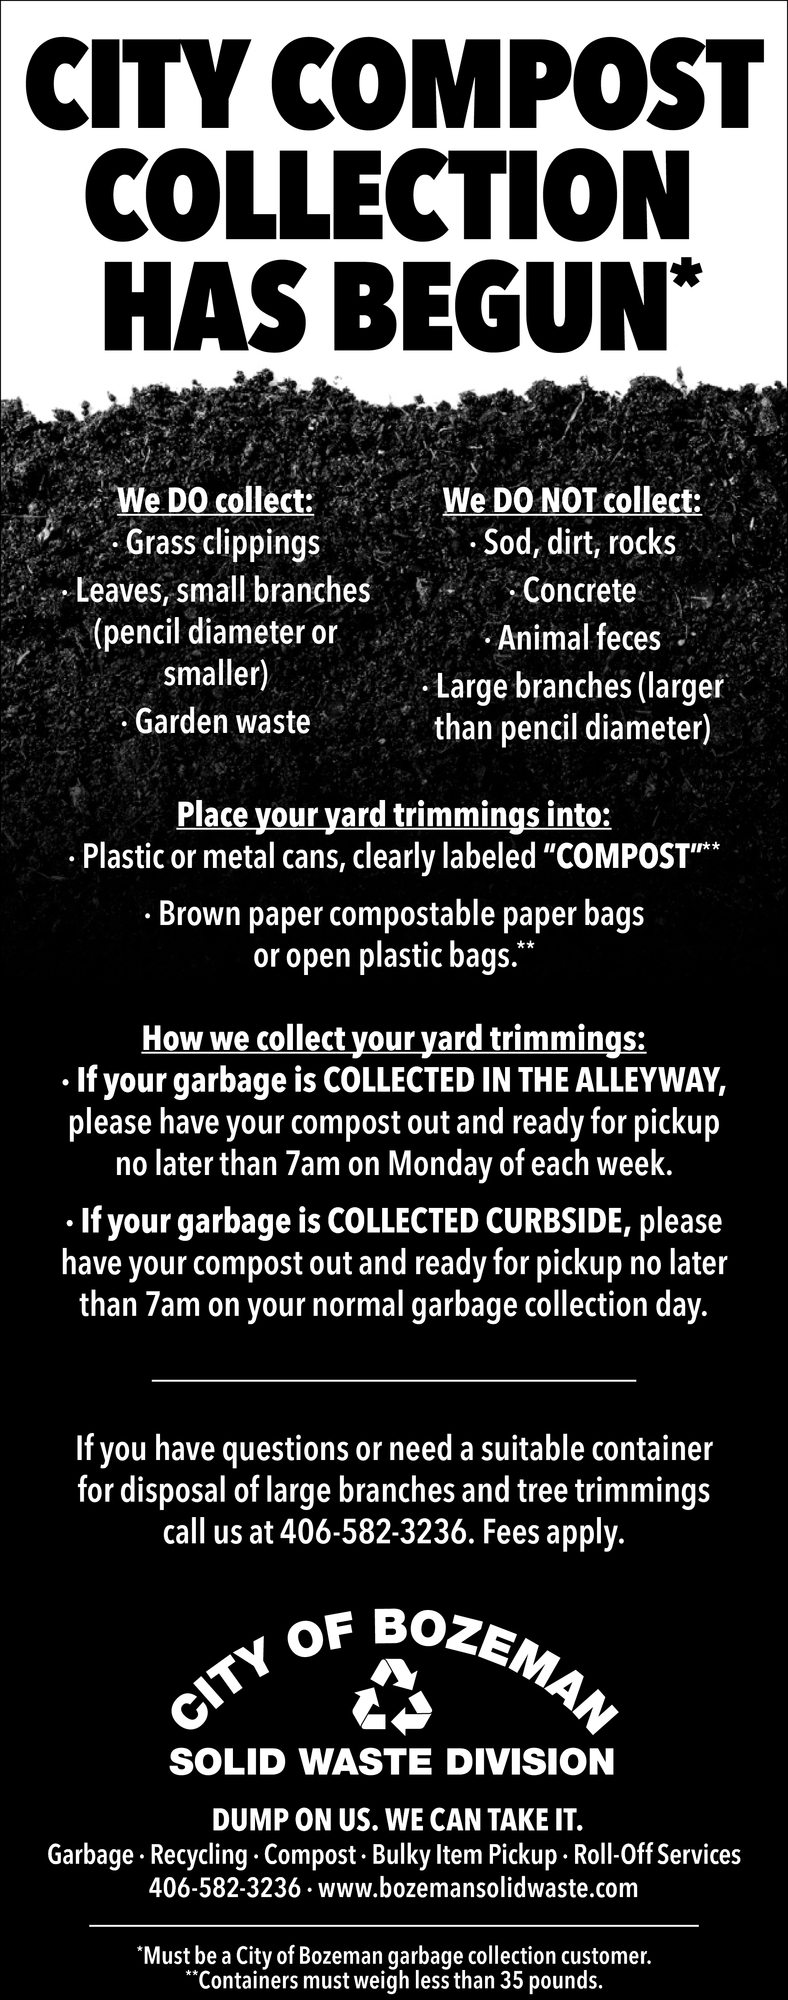 City Compost Collection Has Begun